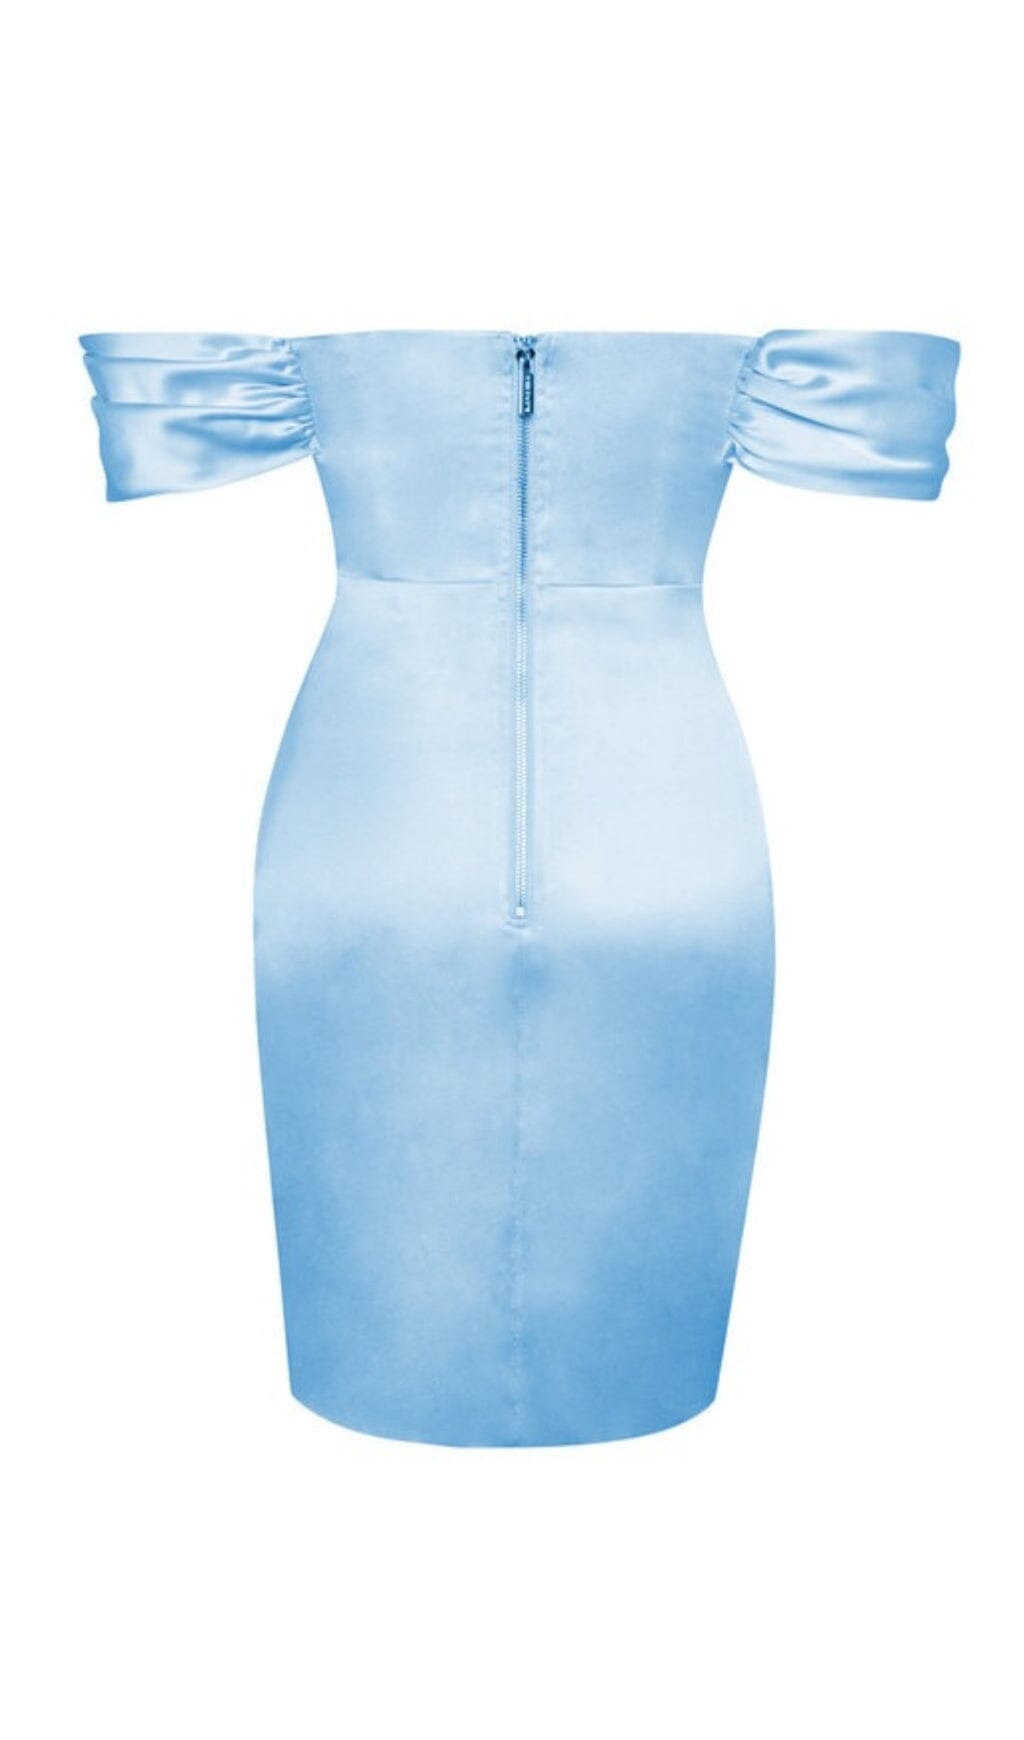 BABY BLUE OFF SHOULDER SATIN CORSET DRESS